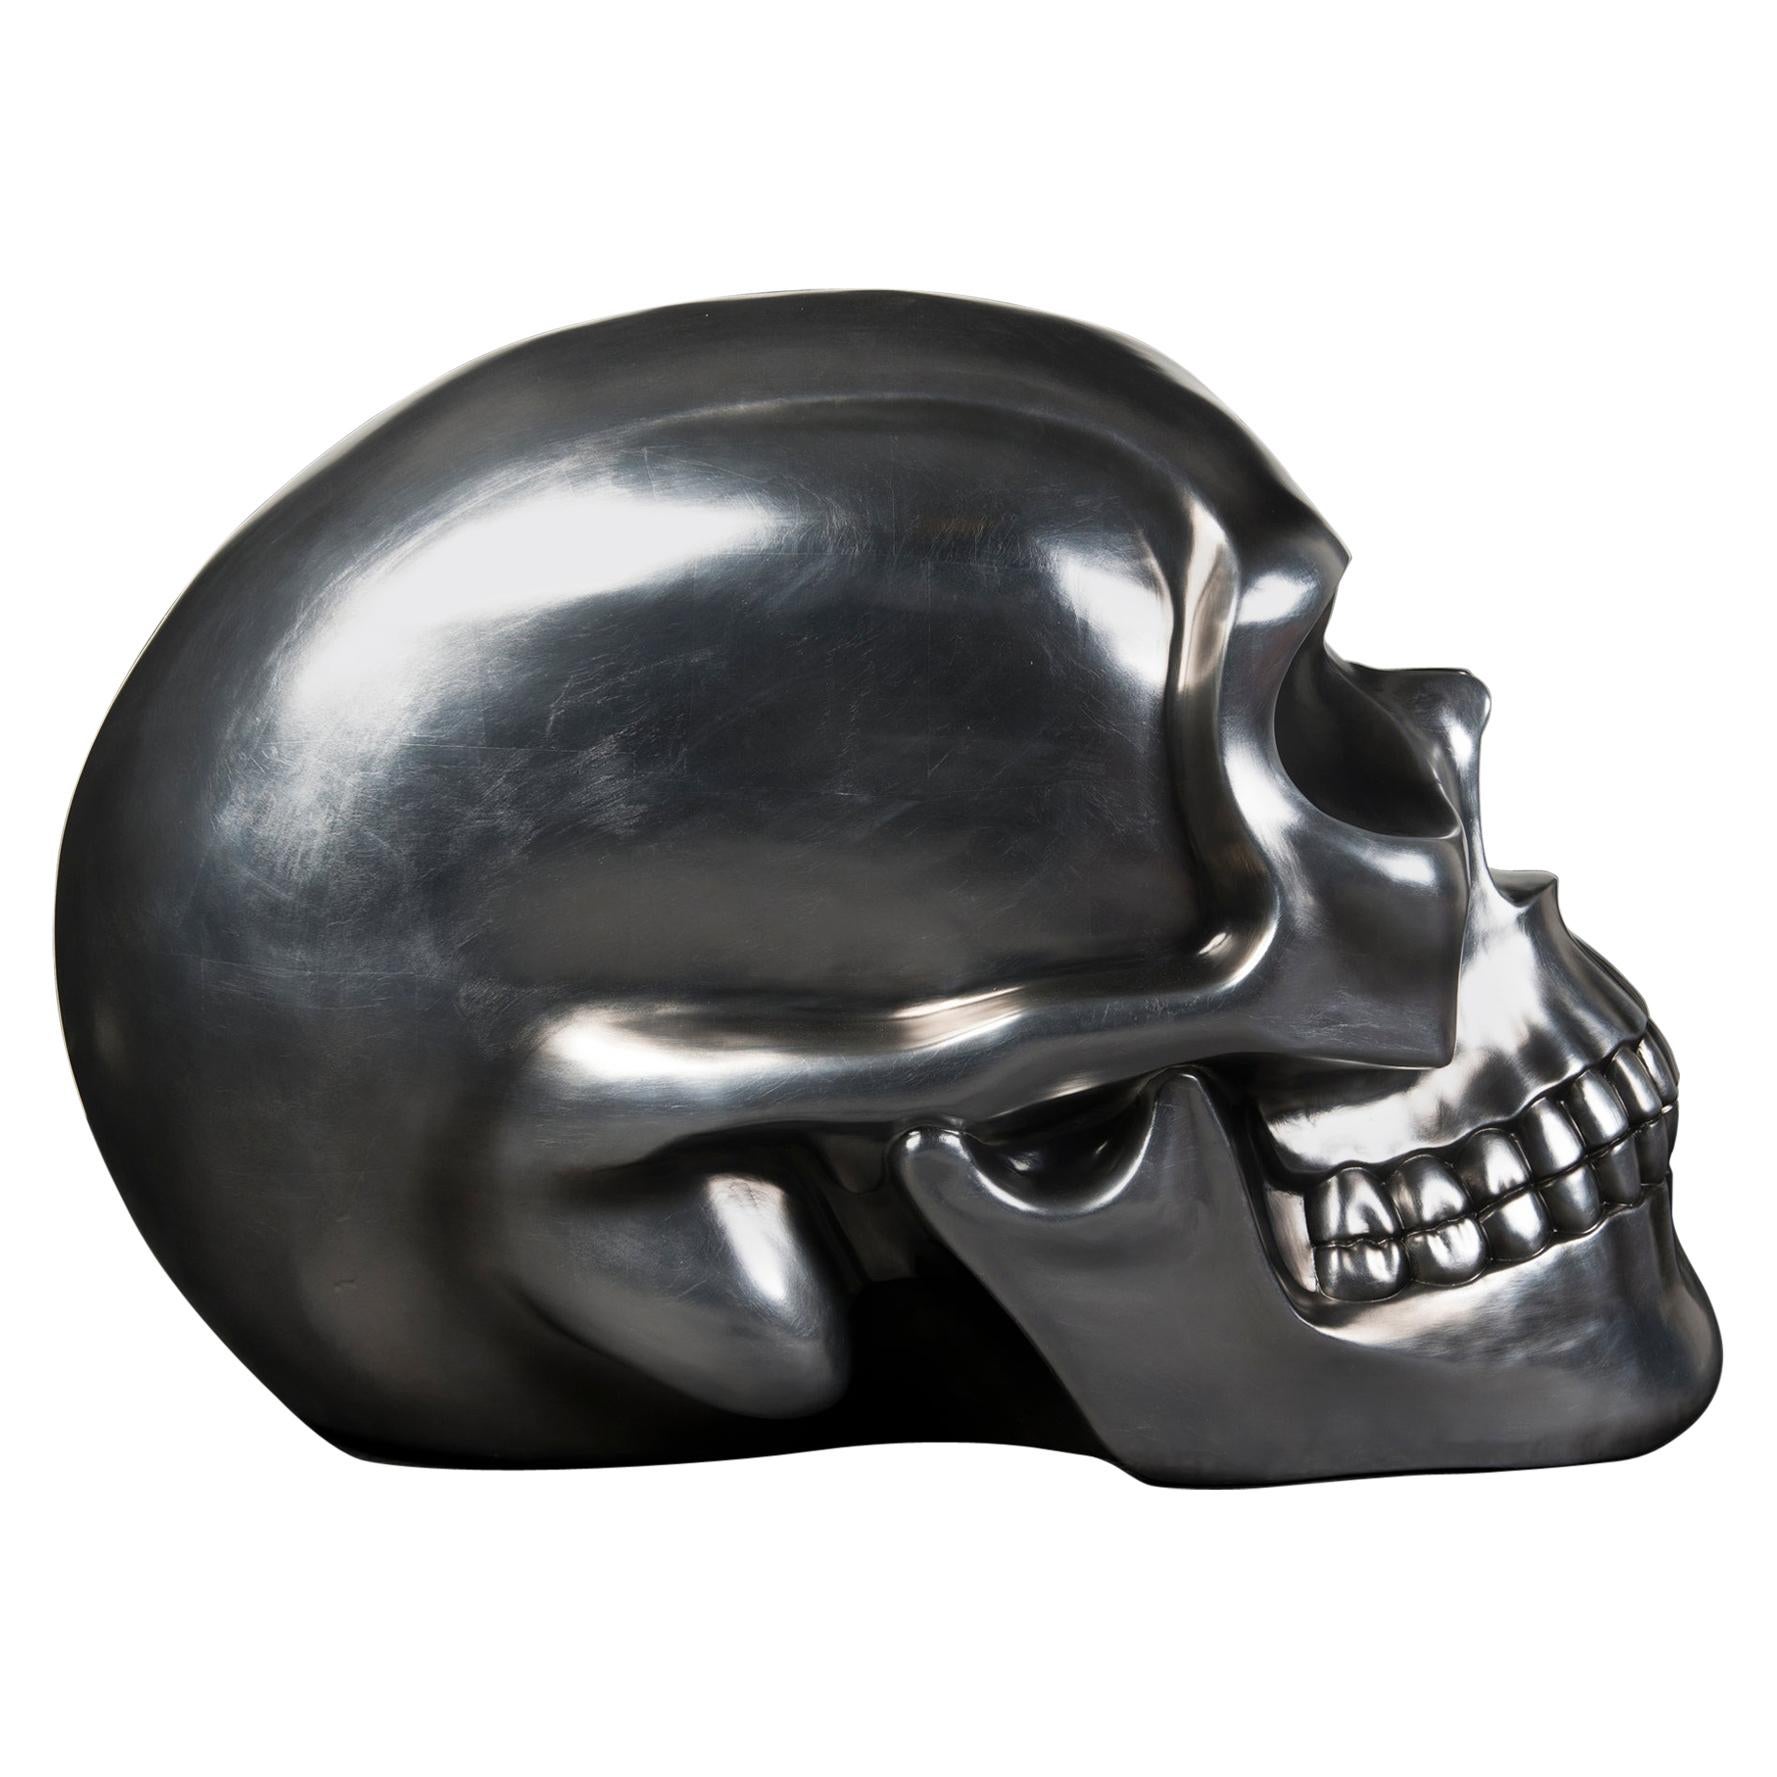 Le crâne, céramique, noir argenté souple, Italie